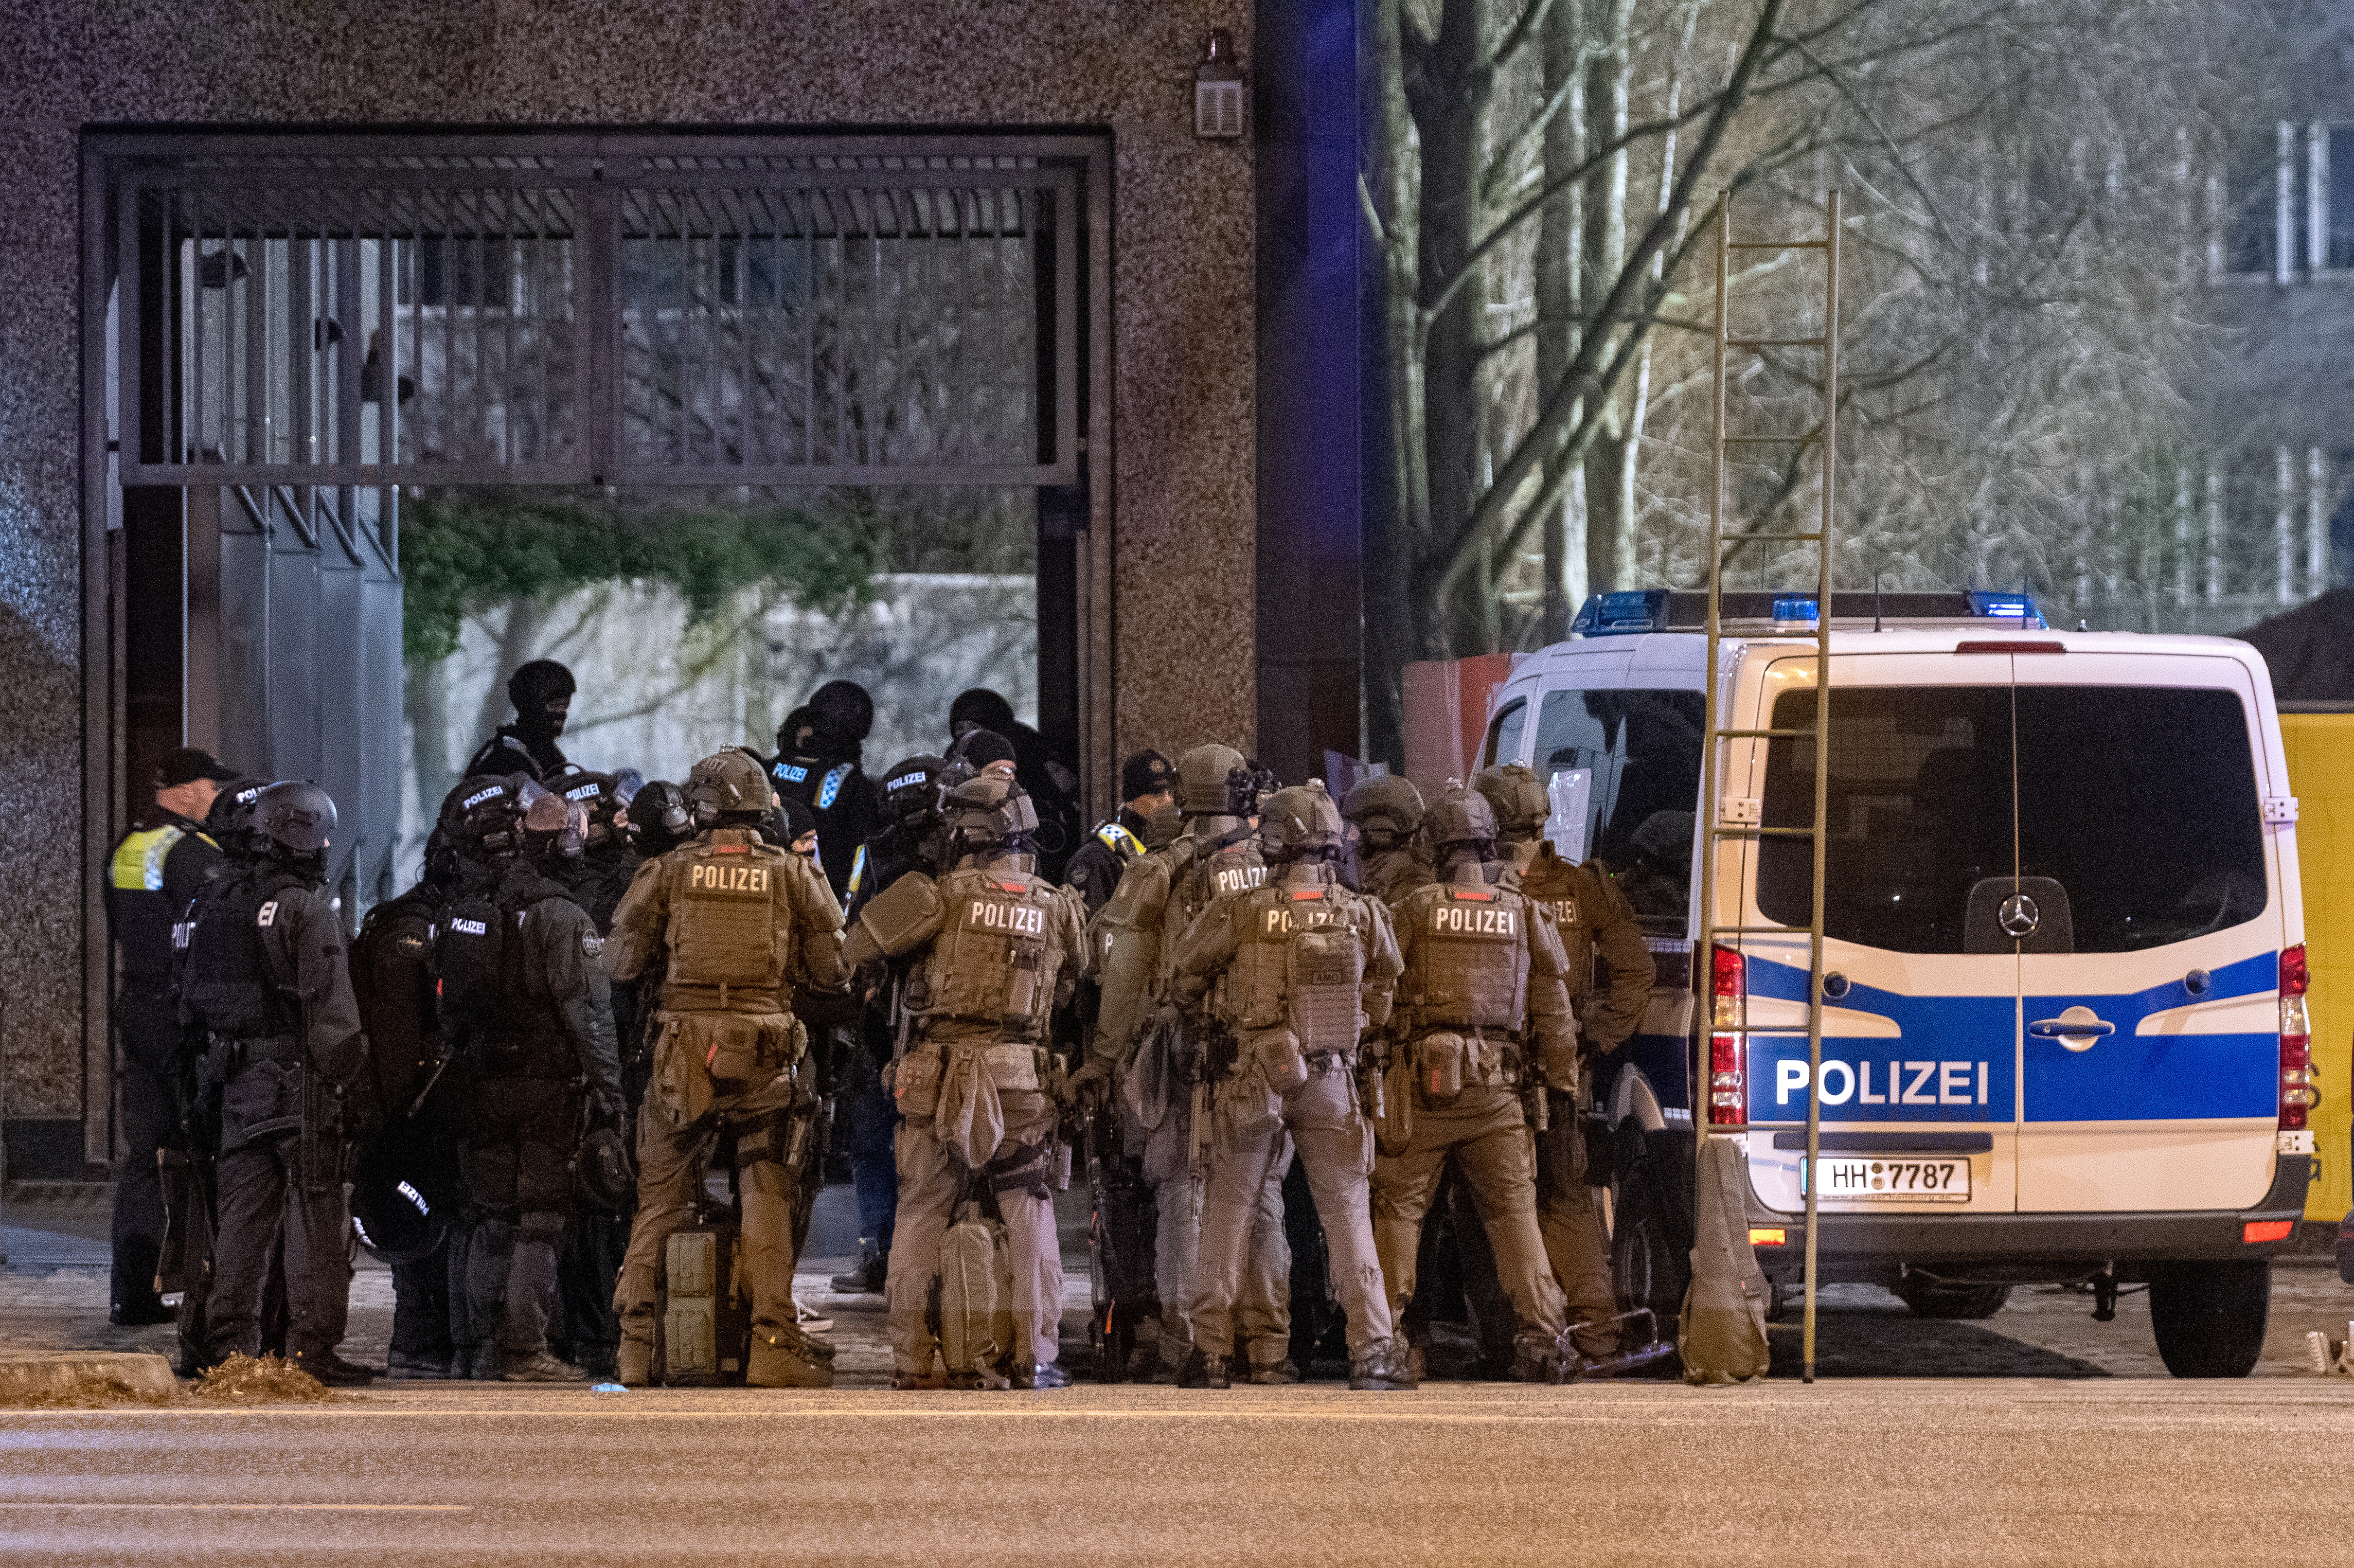 Policías en el sitio en donde un hombre mató a siete personas en un centro de Testigos de Jehová, en Hamburgo, Alemania. El atacante se suicidó luego de disparar en ese lugar. (Foto Prensa Libre: EFE/EPA/NEWS5)